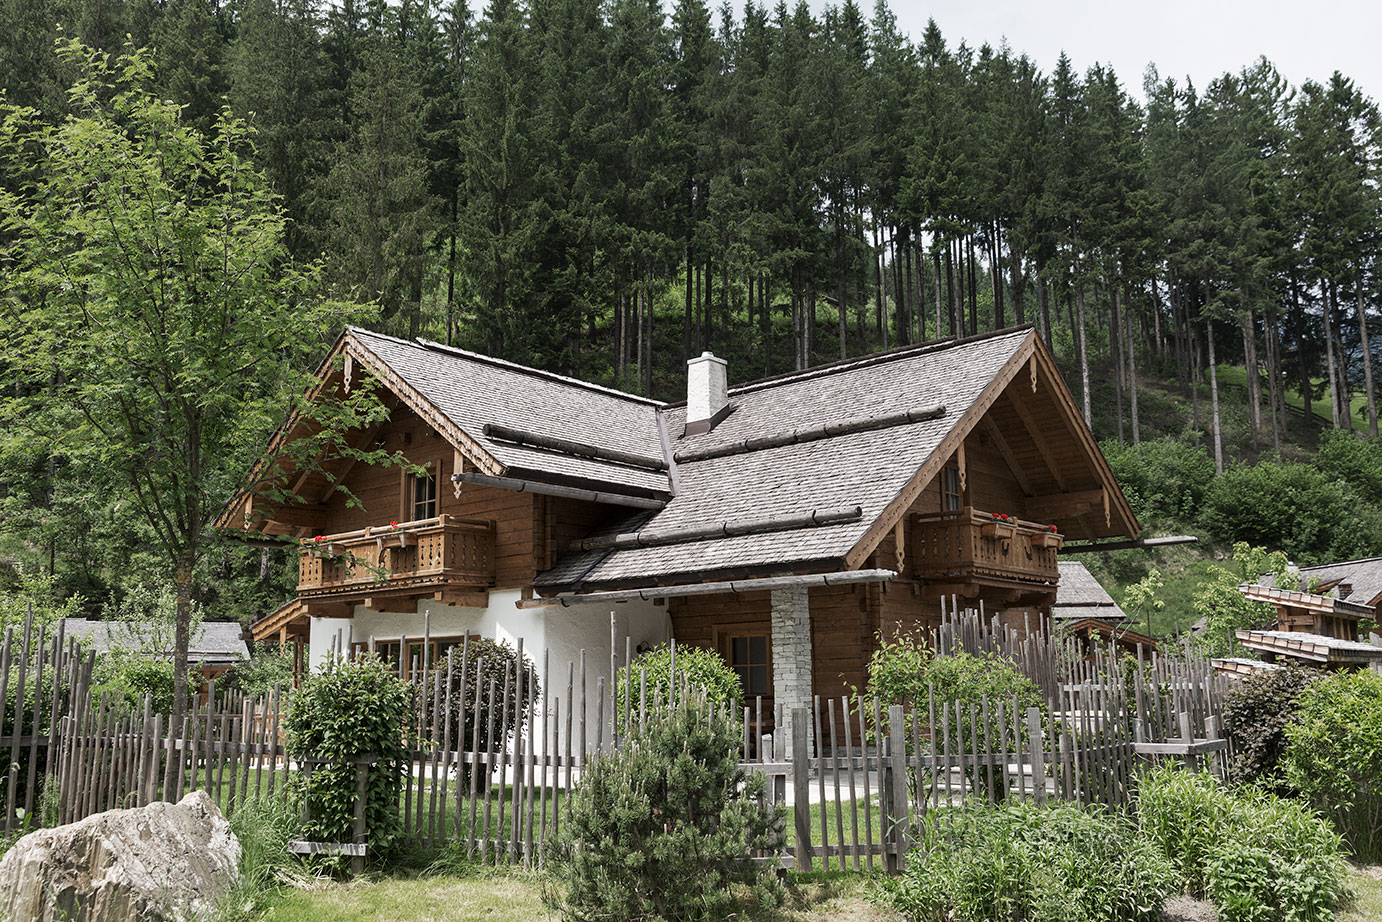 Chalet Förster-Hütte